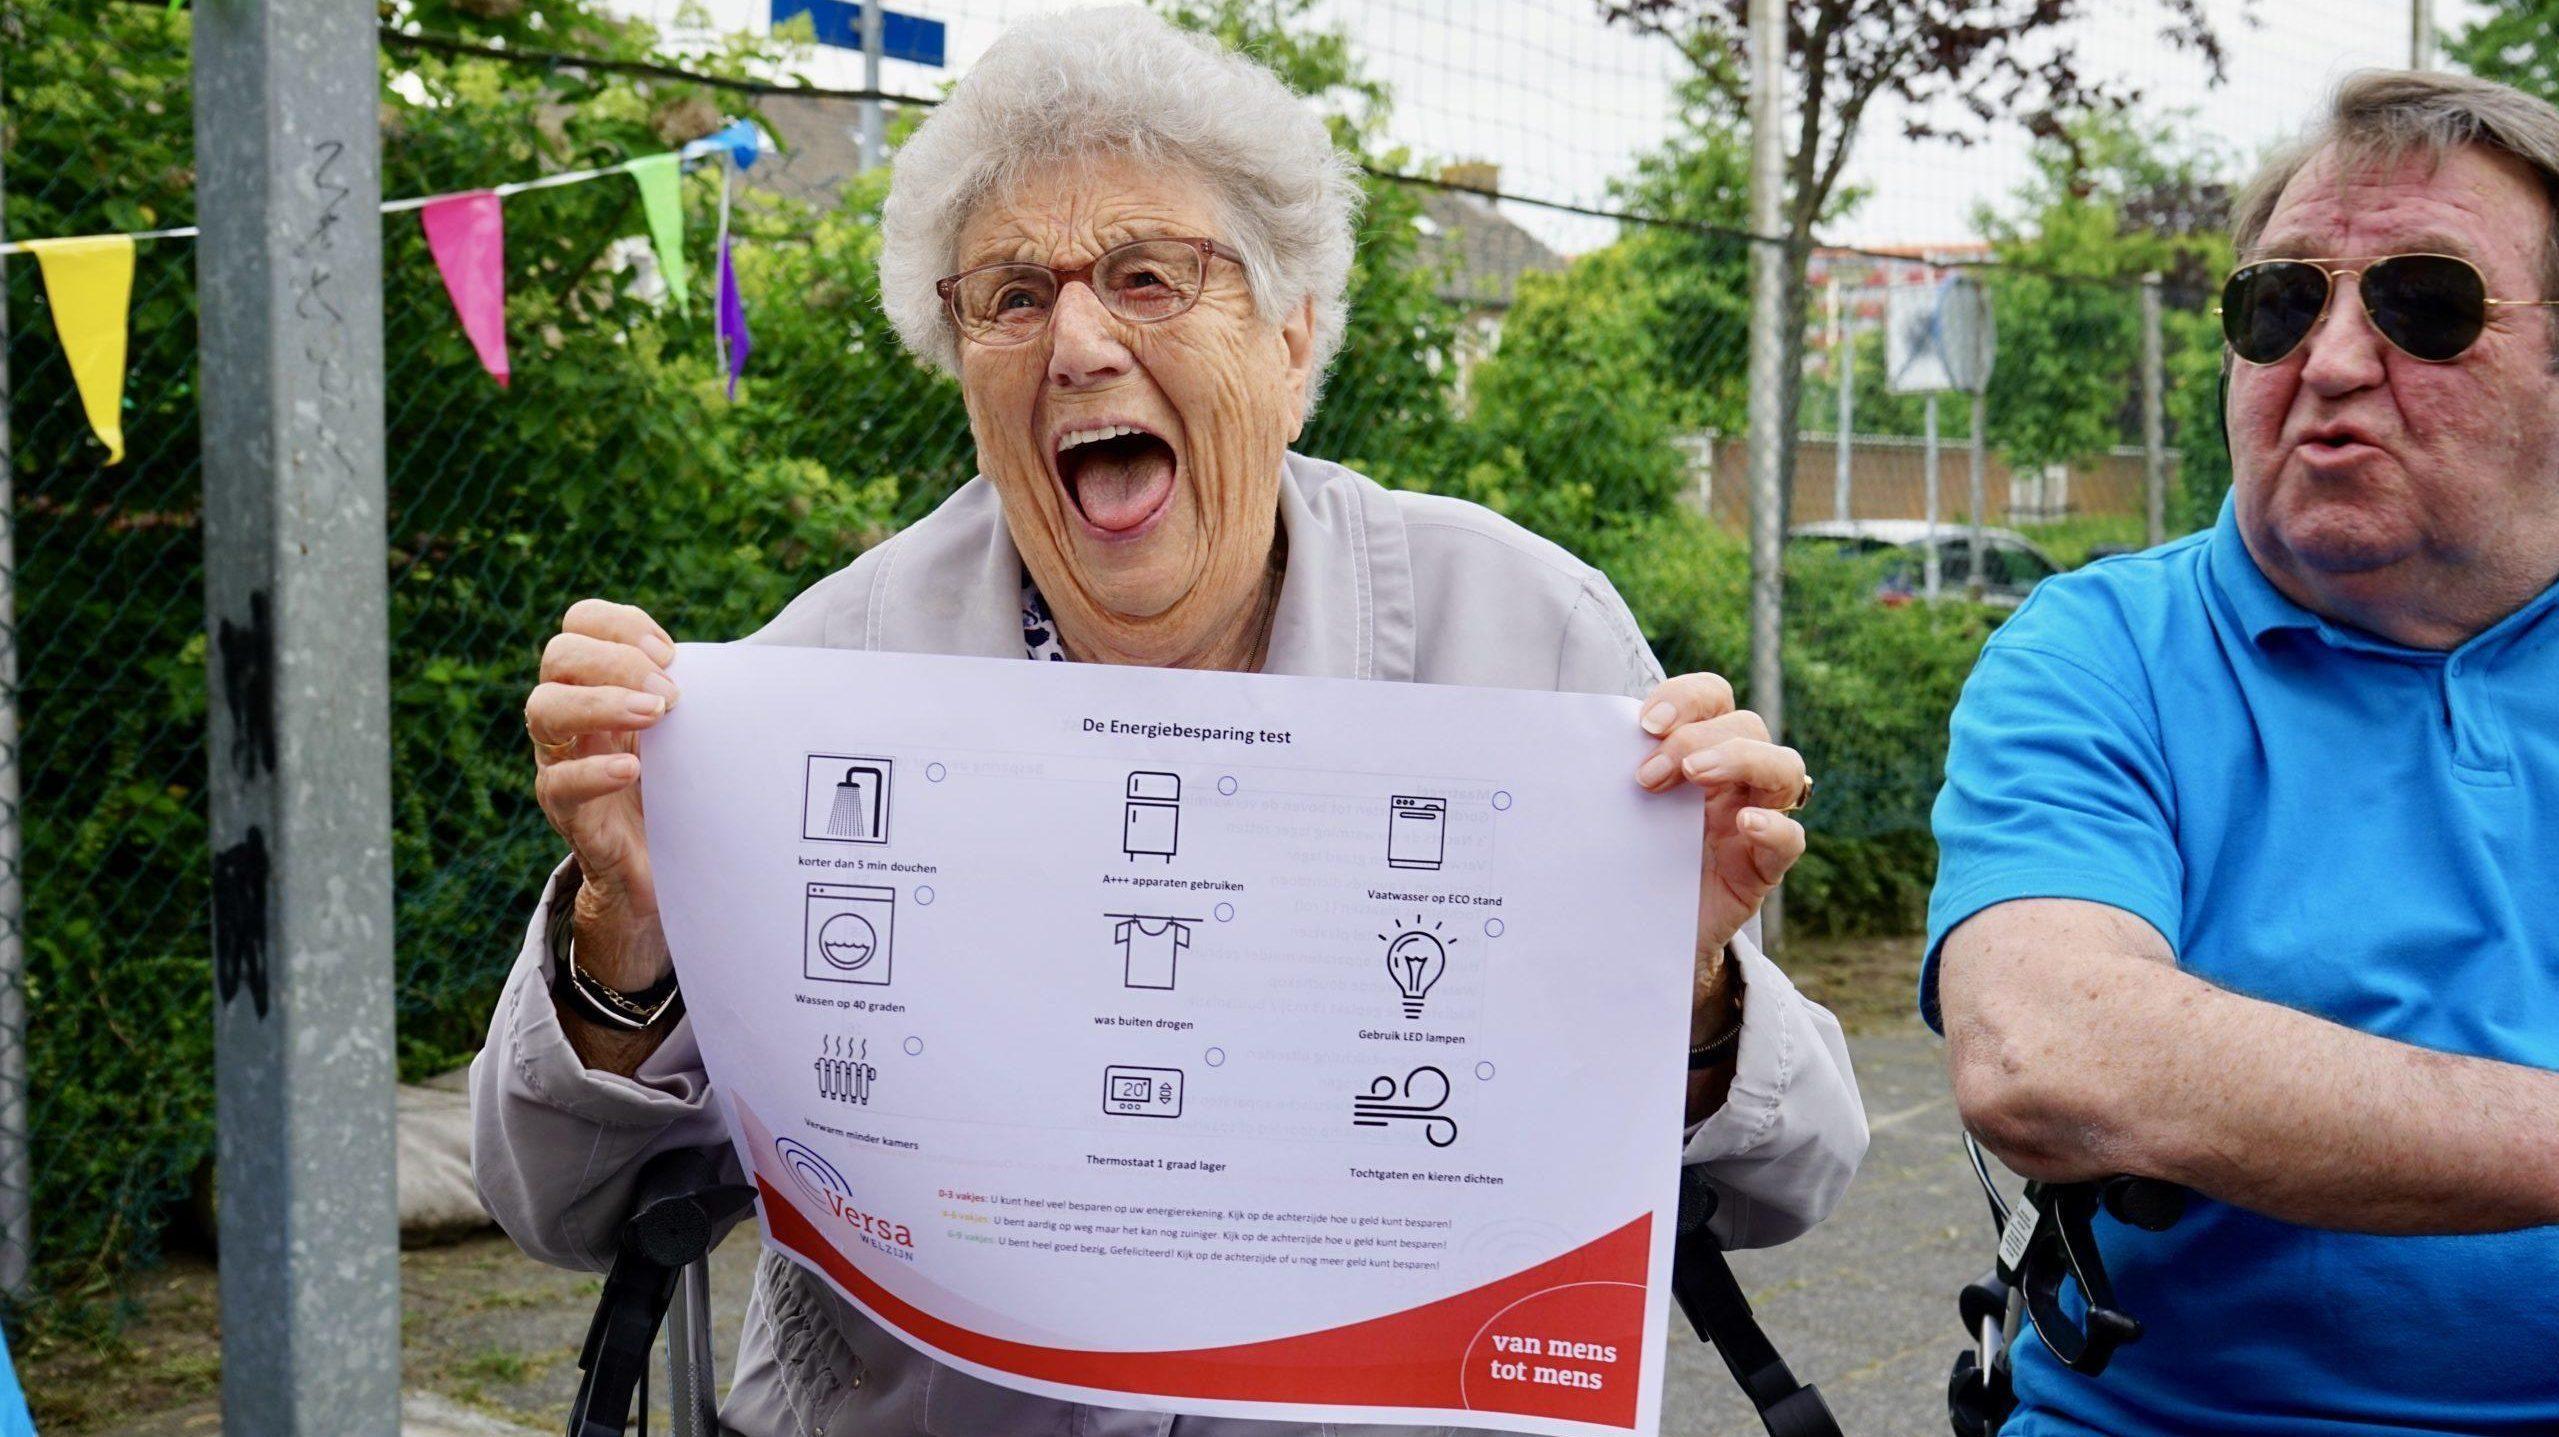 zittende vrouw op rollator toont affiche over energiebesparing tijdens buurtbijeenkomst